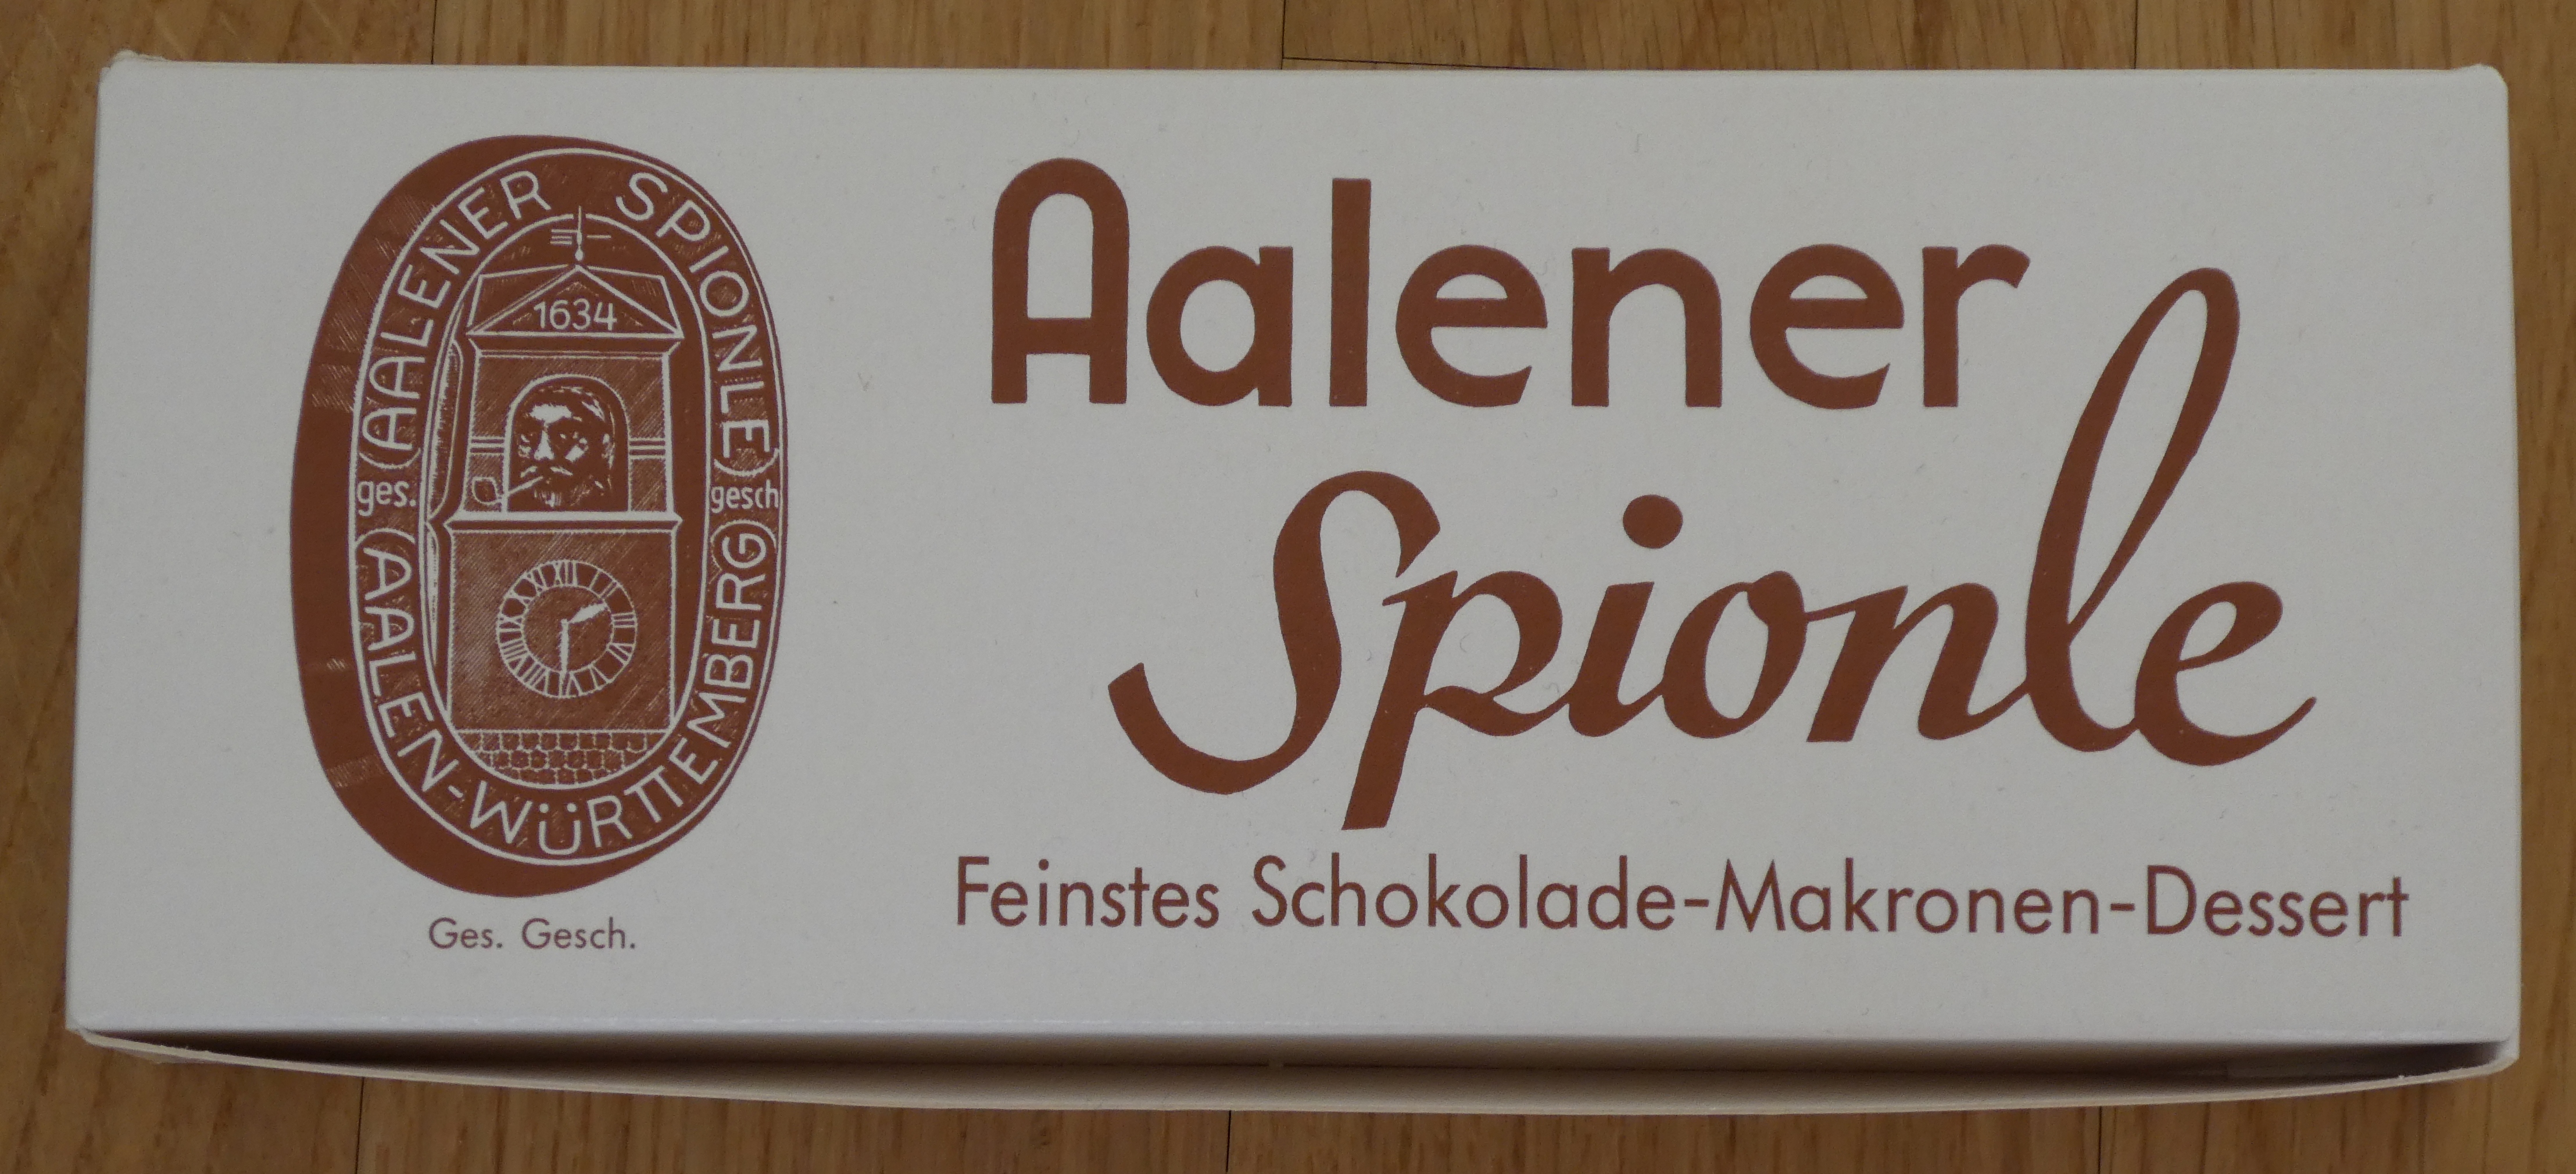 Datei:Aalener Spionle - Dessert - Verpackung.jpg